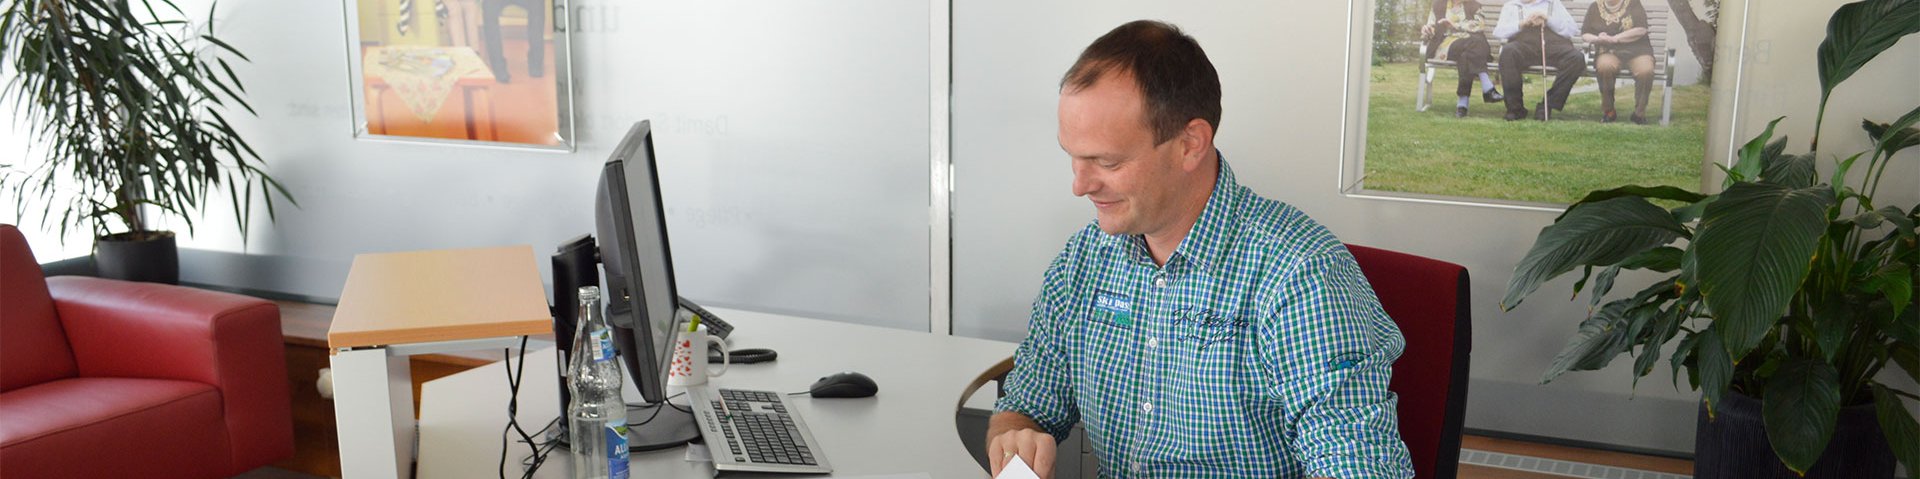 Ein Mann am Schreibtisch mit Papieren und einem Bildschirm vor sich